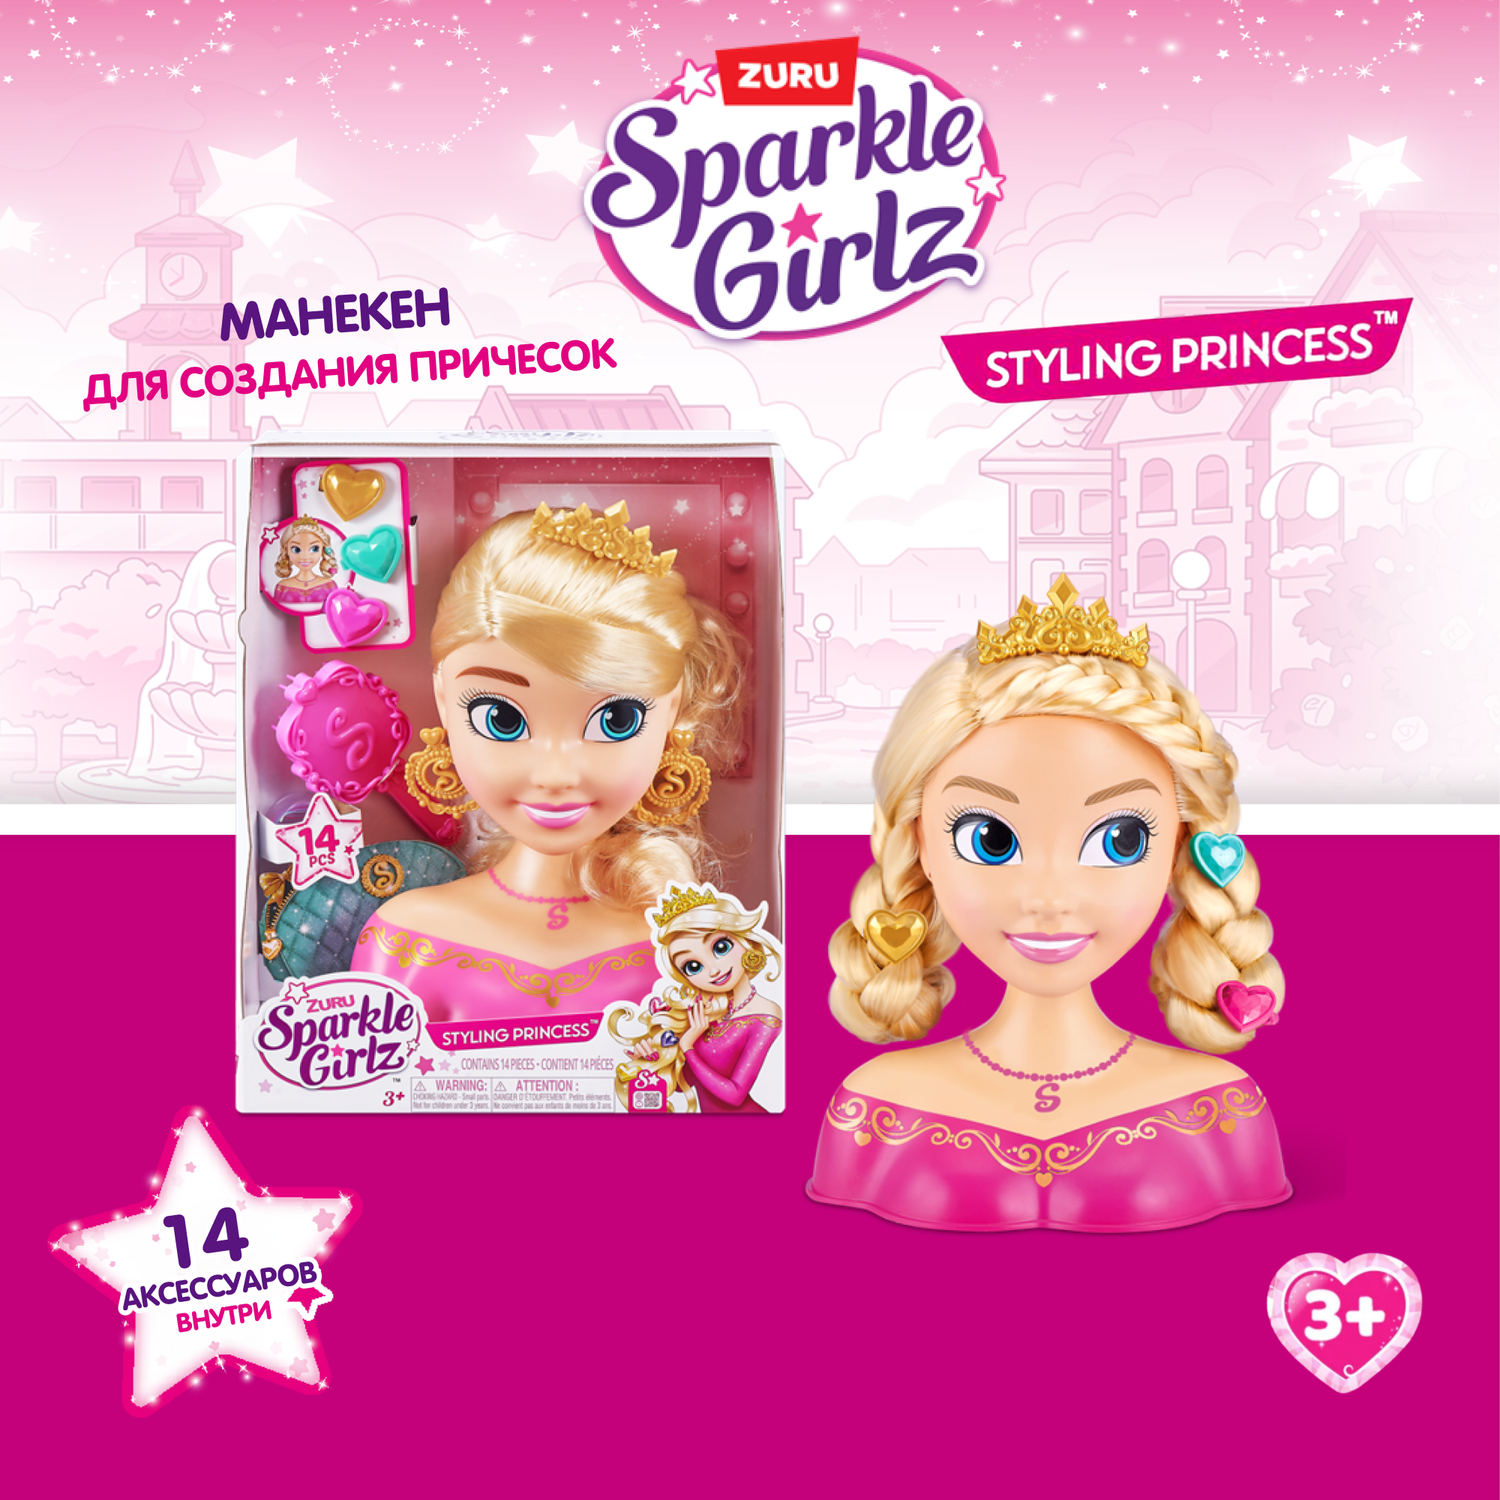 Набор игровой Sparkle Girlz Кукла с волосами 10097B/10097 - фото 1